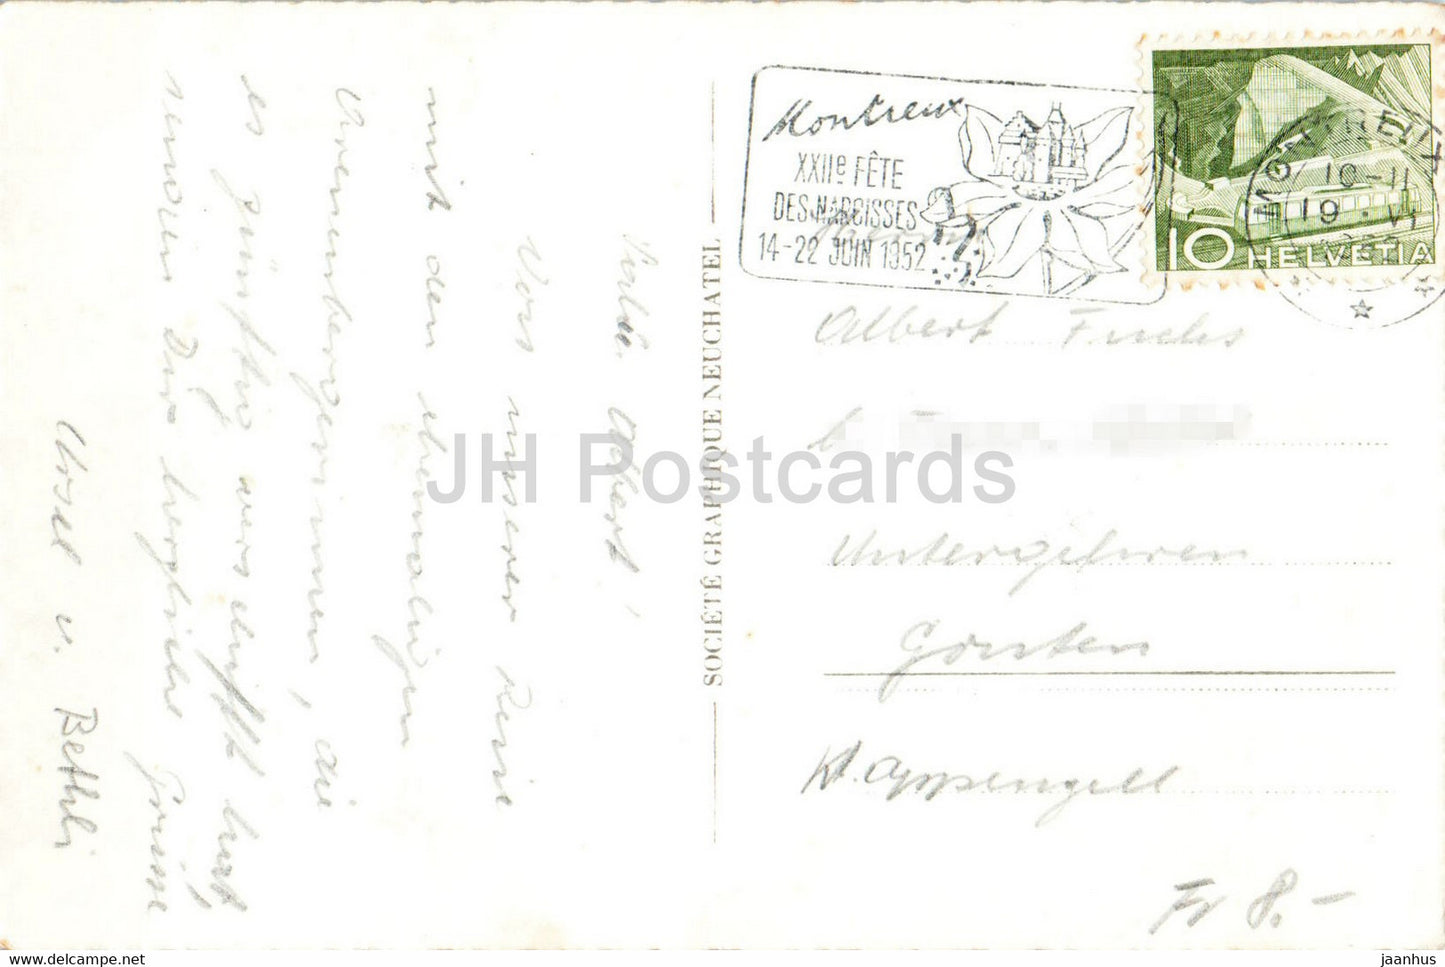 Montreux - Clarens - 7730 - 1952 - alte Postkarte - Schweiz - gebraucht